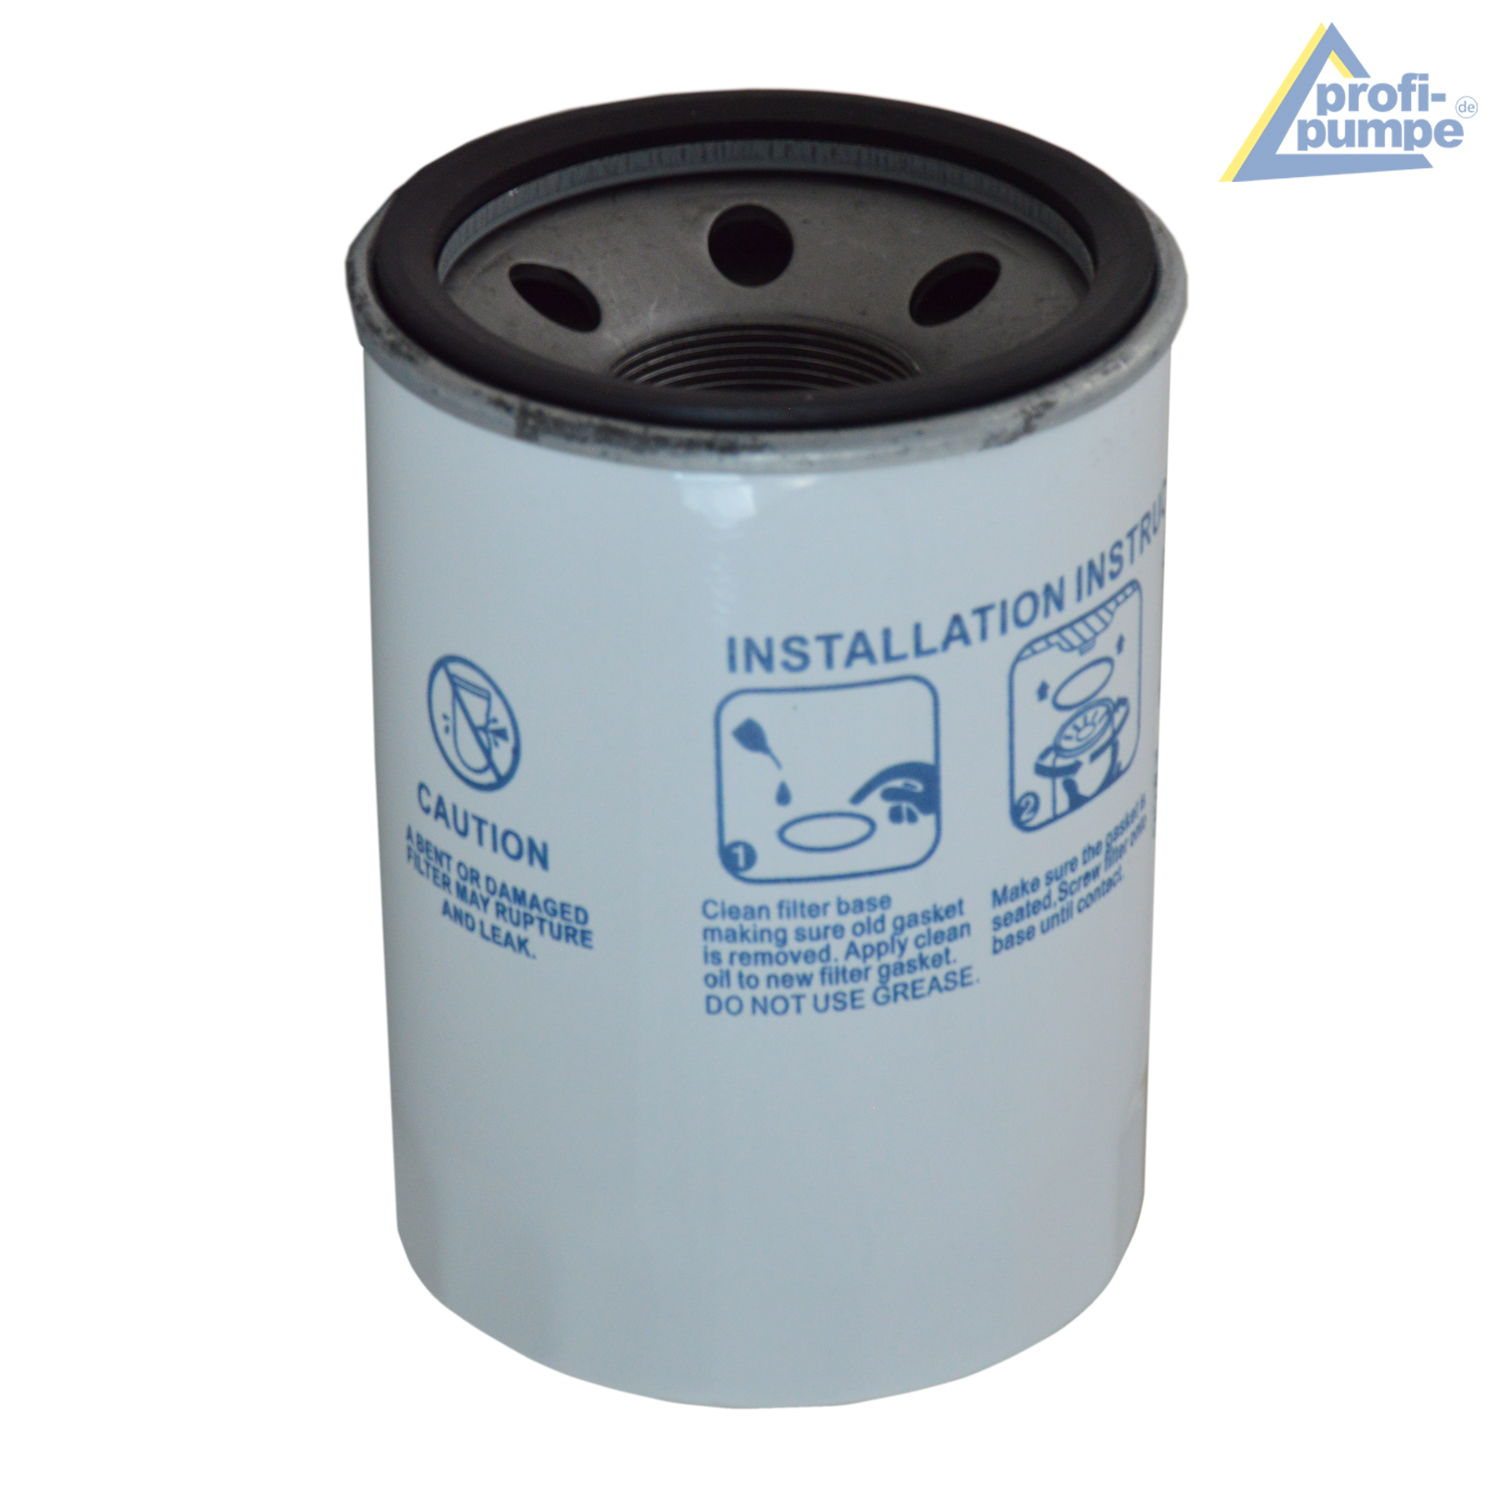 Ersatzfilter-Kartusche für Diesel-Filter GL-4-Y